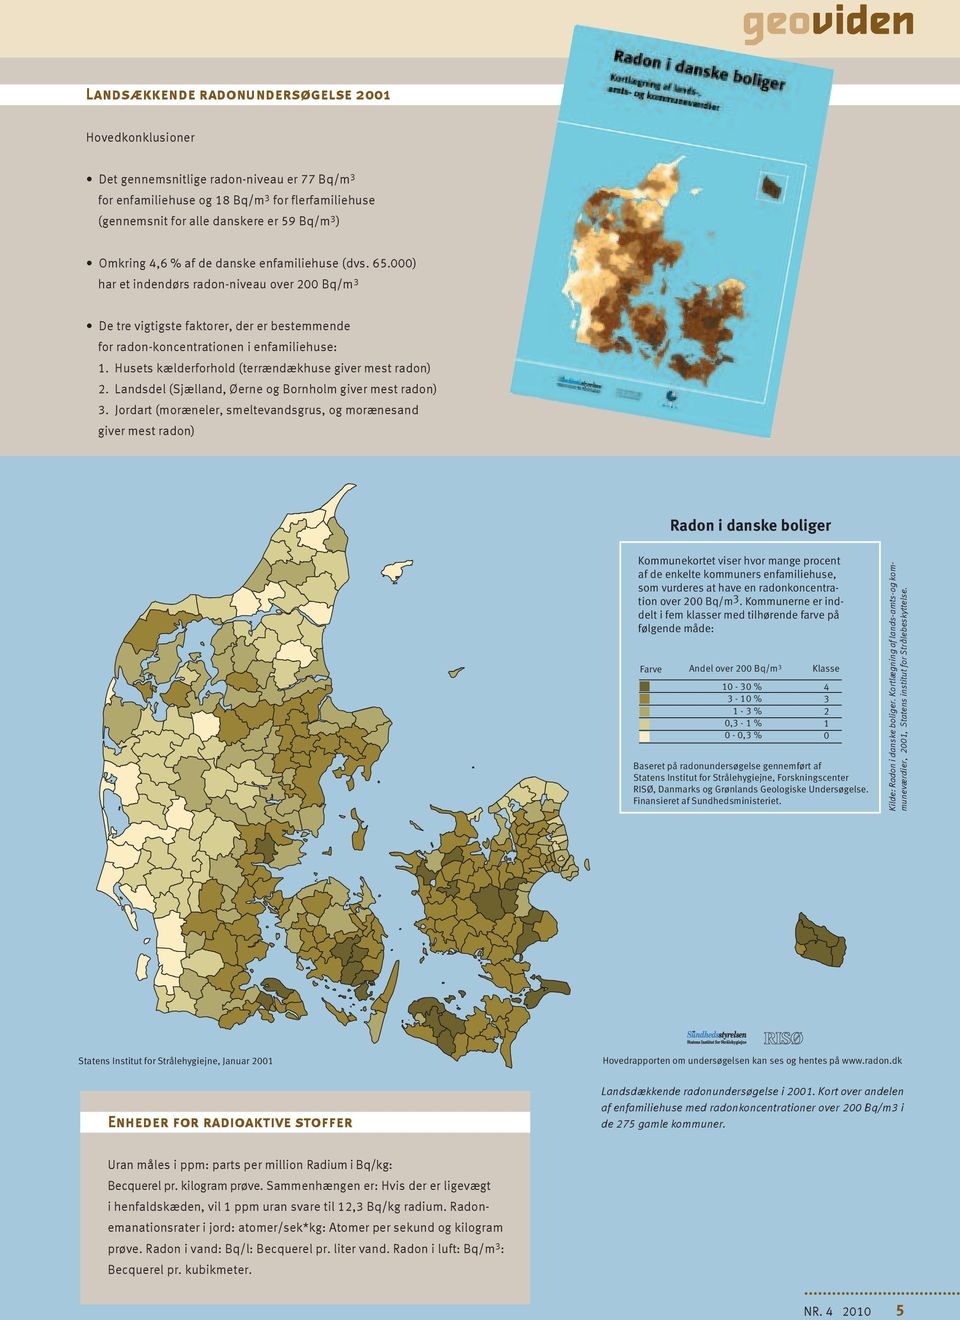 Husets kælderforhold (terrændækhuse giver mest radon) 2. Landsdel (Sjælland, Øerne og Bornholm giver mest radon) 3.